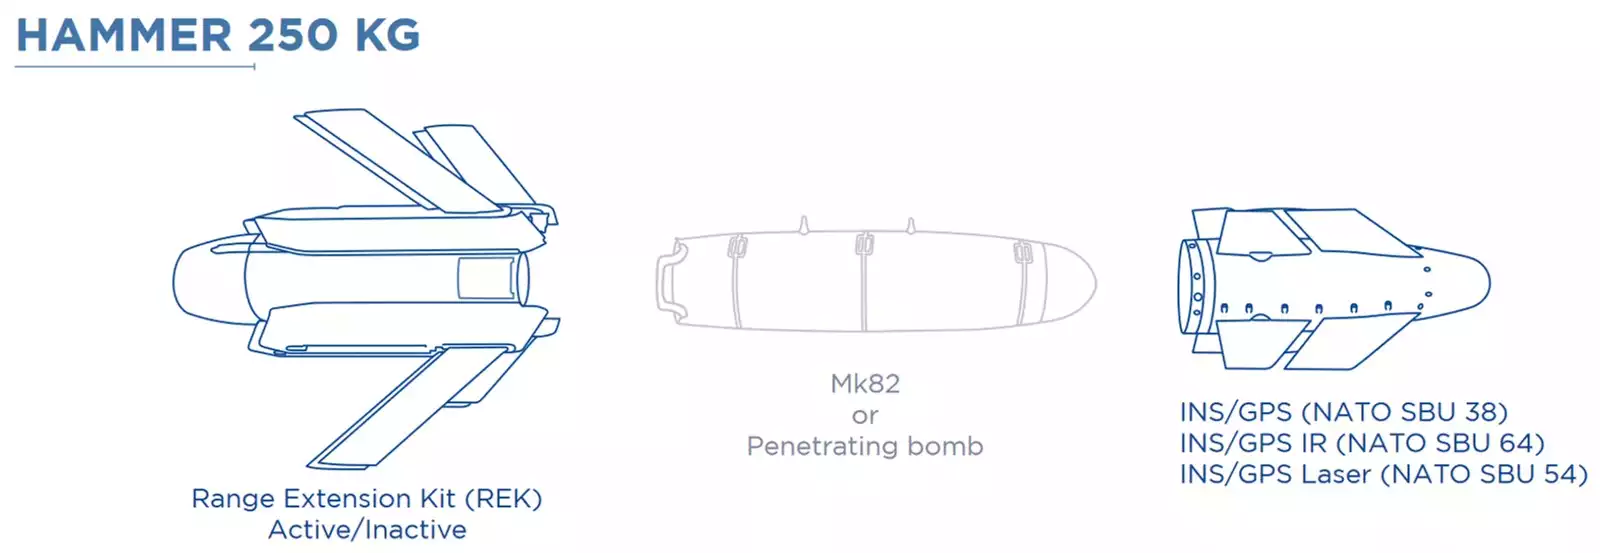 Schéma d'une bombe air-sol propulsée et guidée AASM/HAMMER 250.